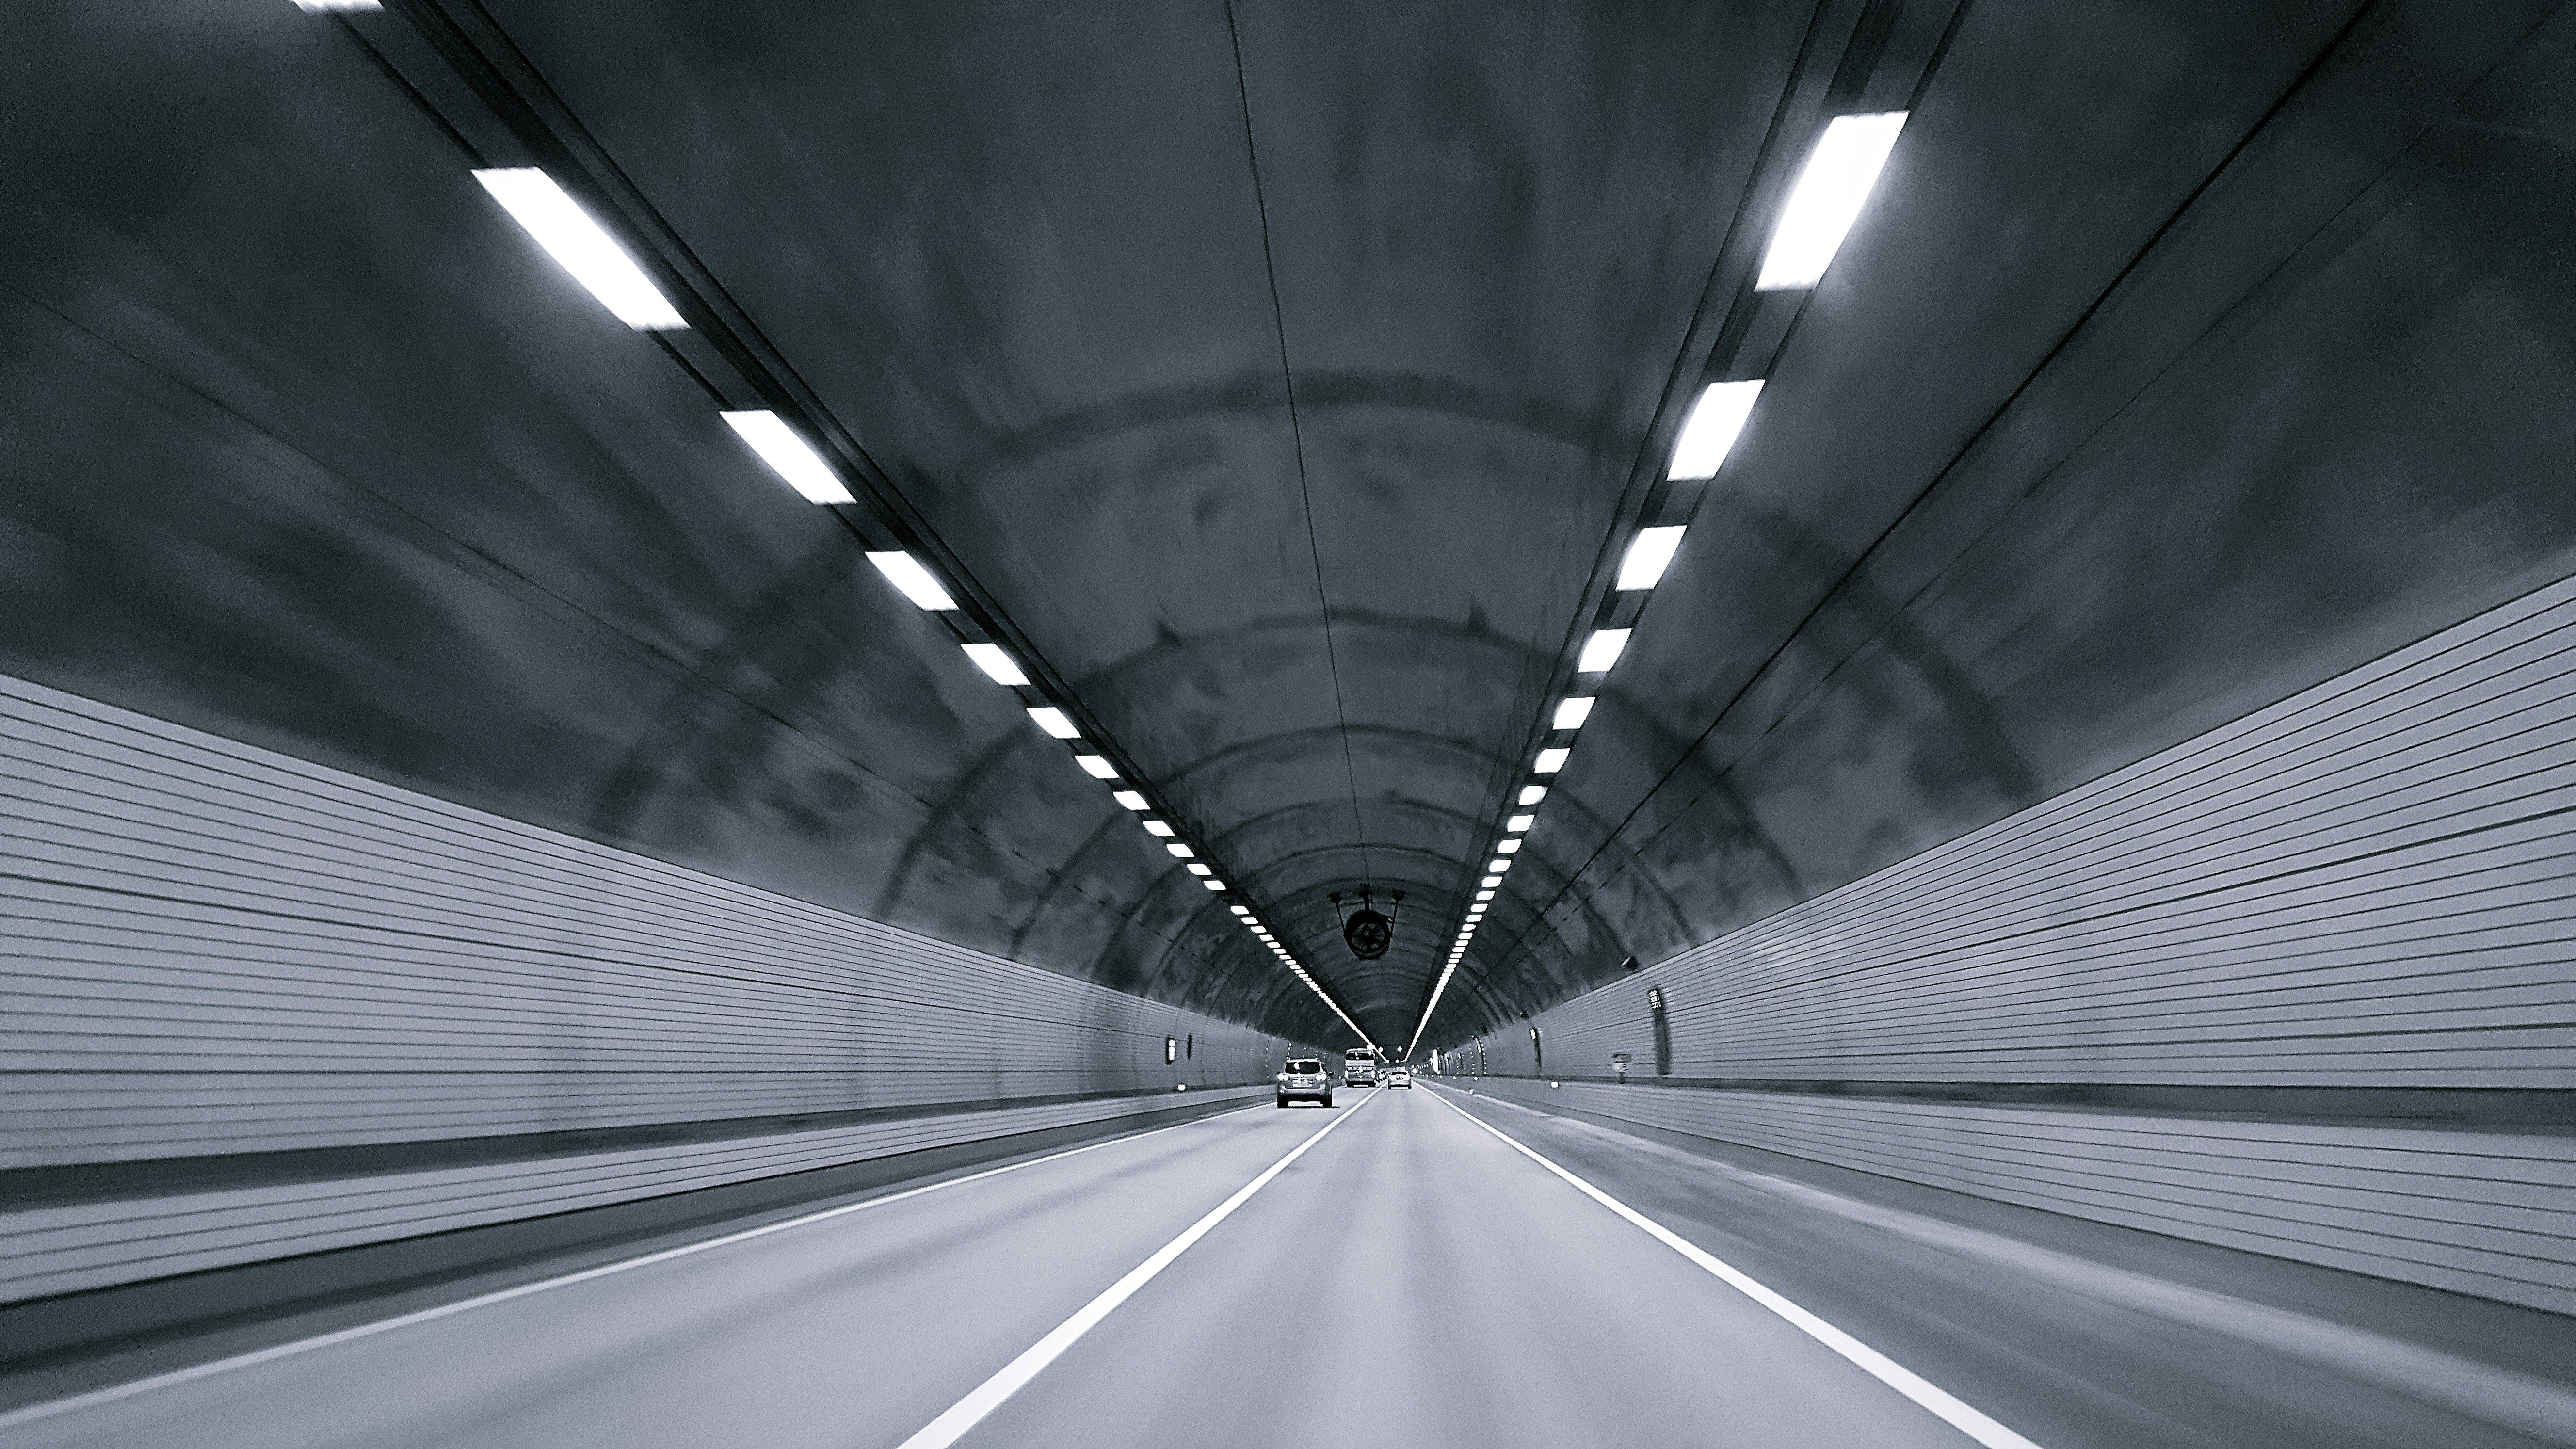 LED-Technologie für Straßentunnelbeleuchtung